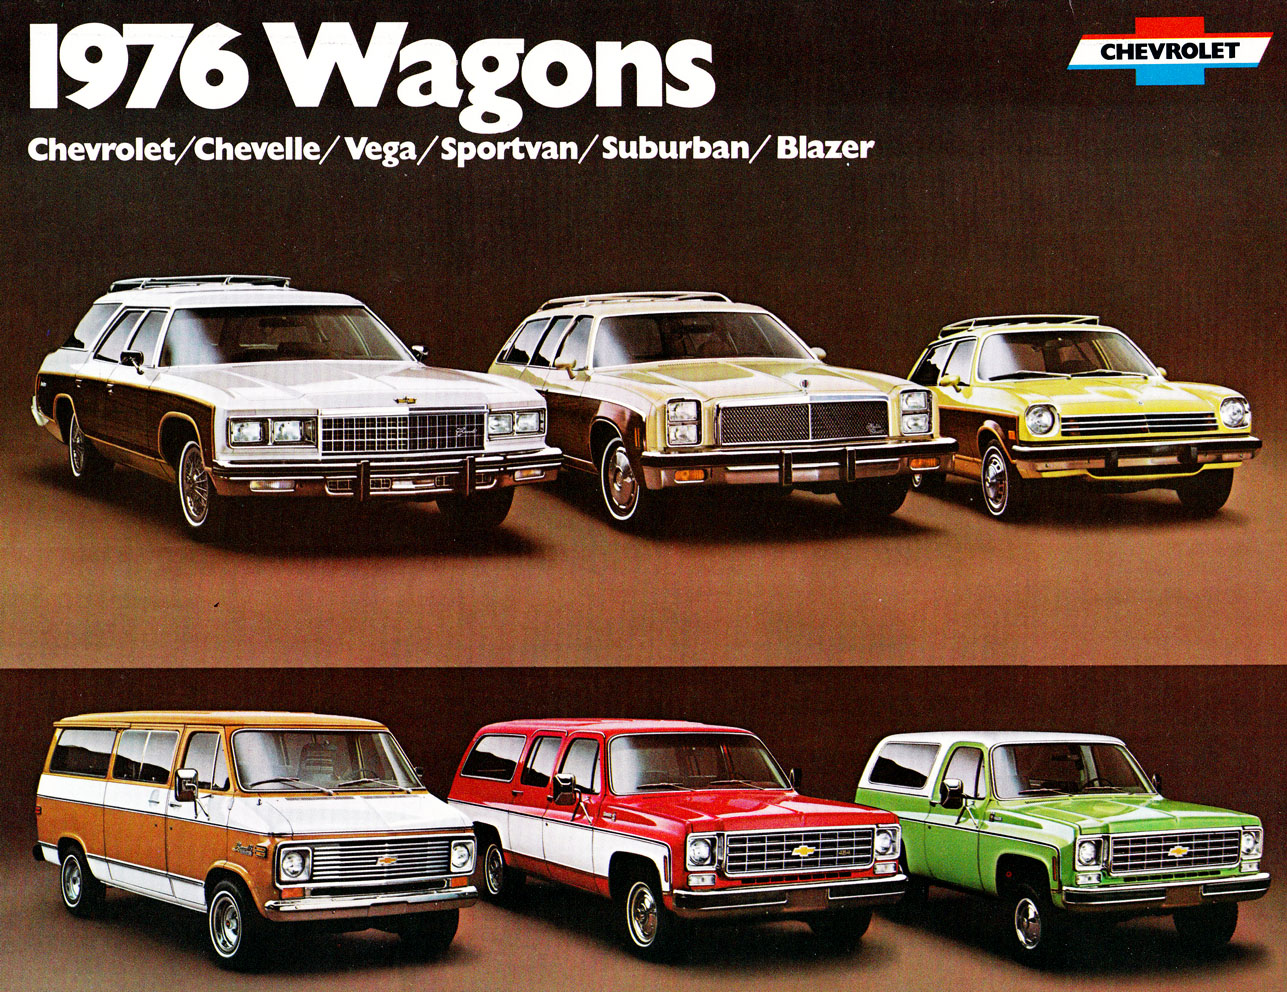 1976_Chevrolet_Wagons_Rev-01